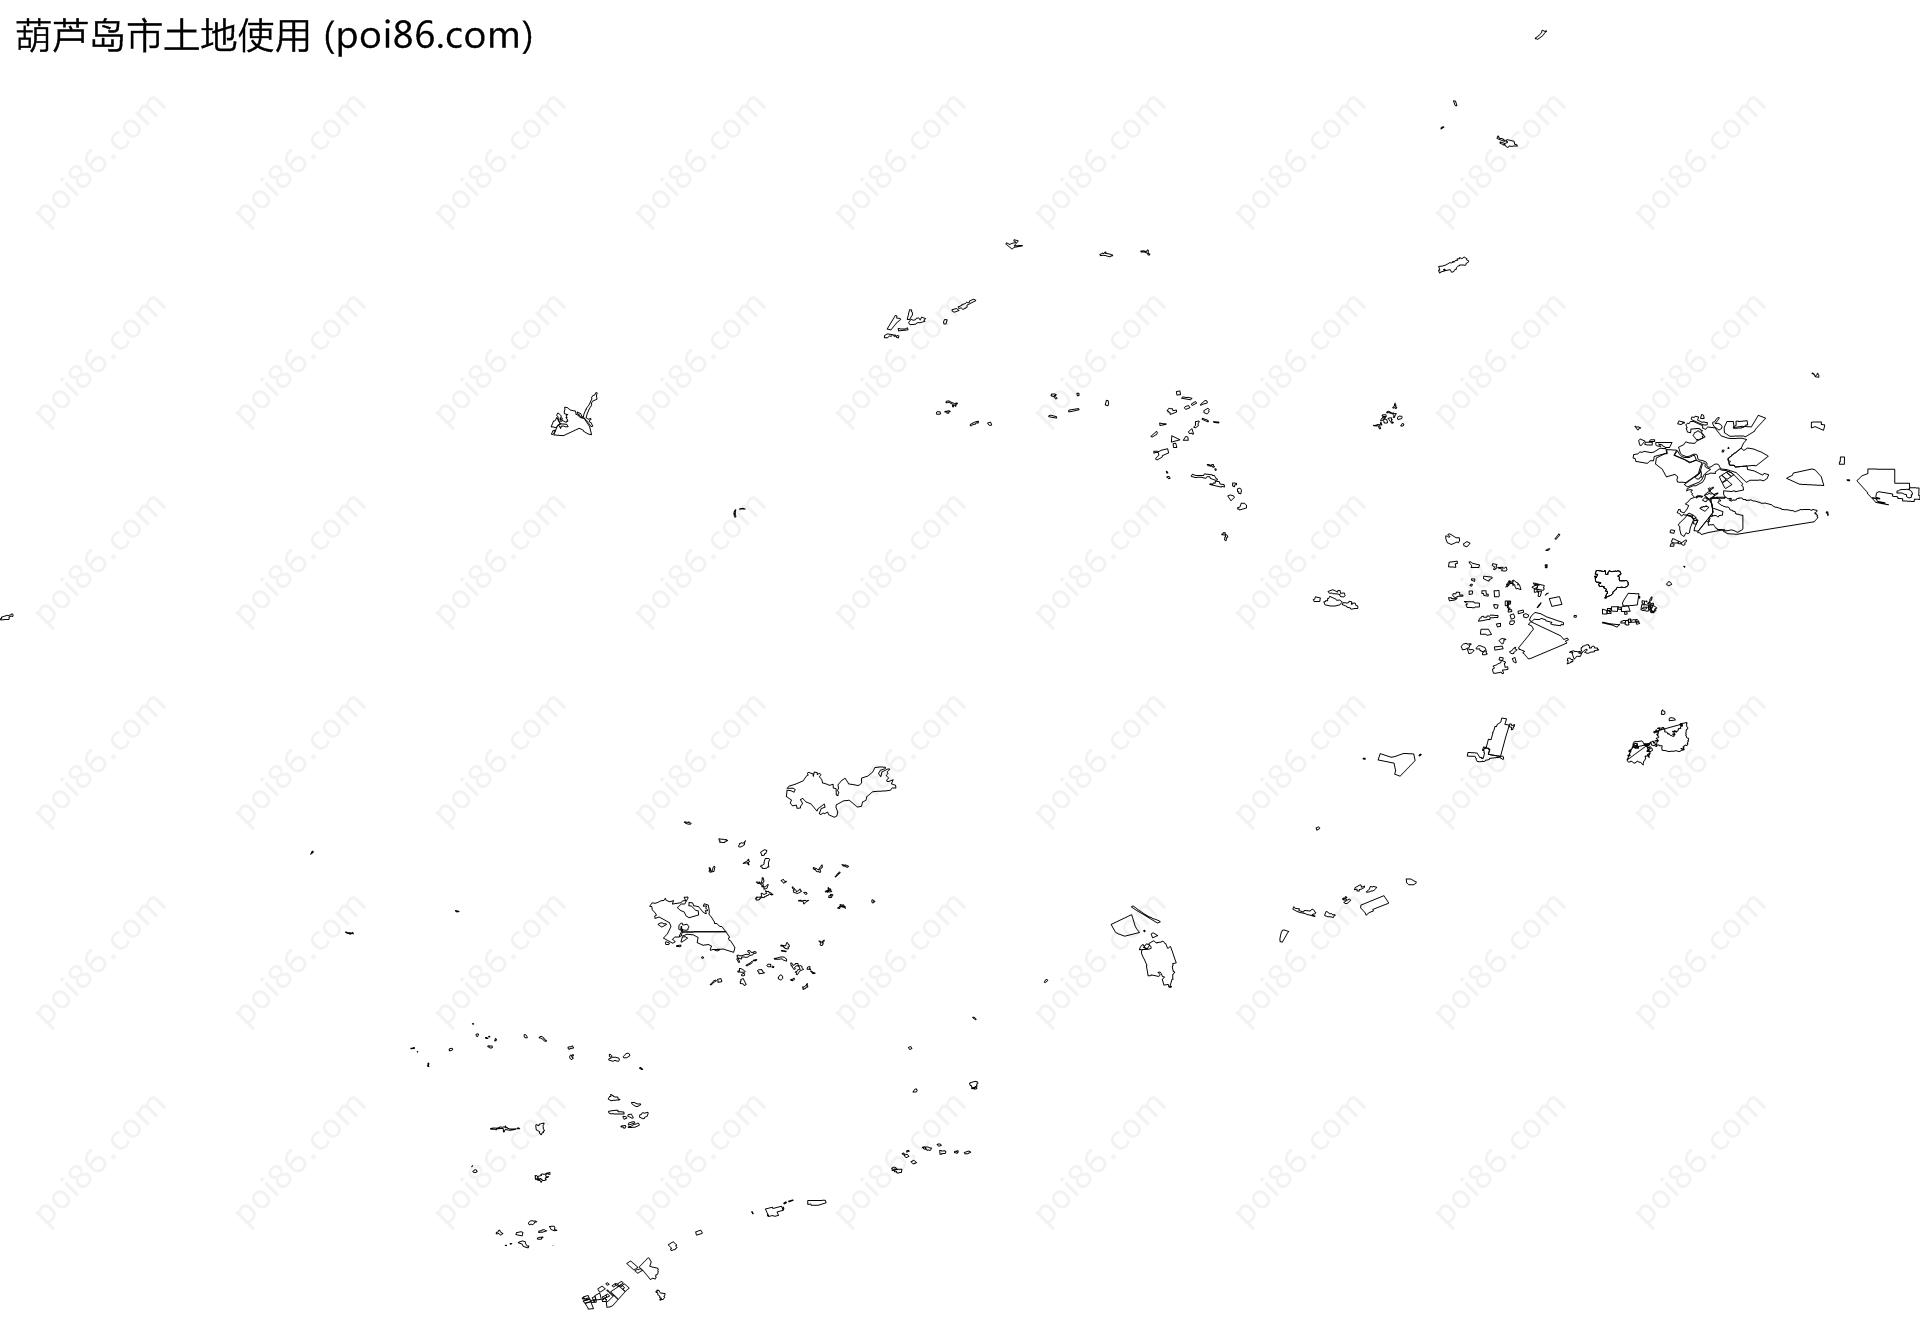 葫芦岛市土地使用地图